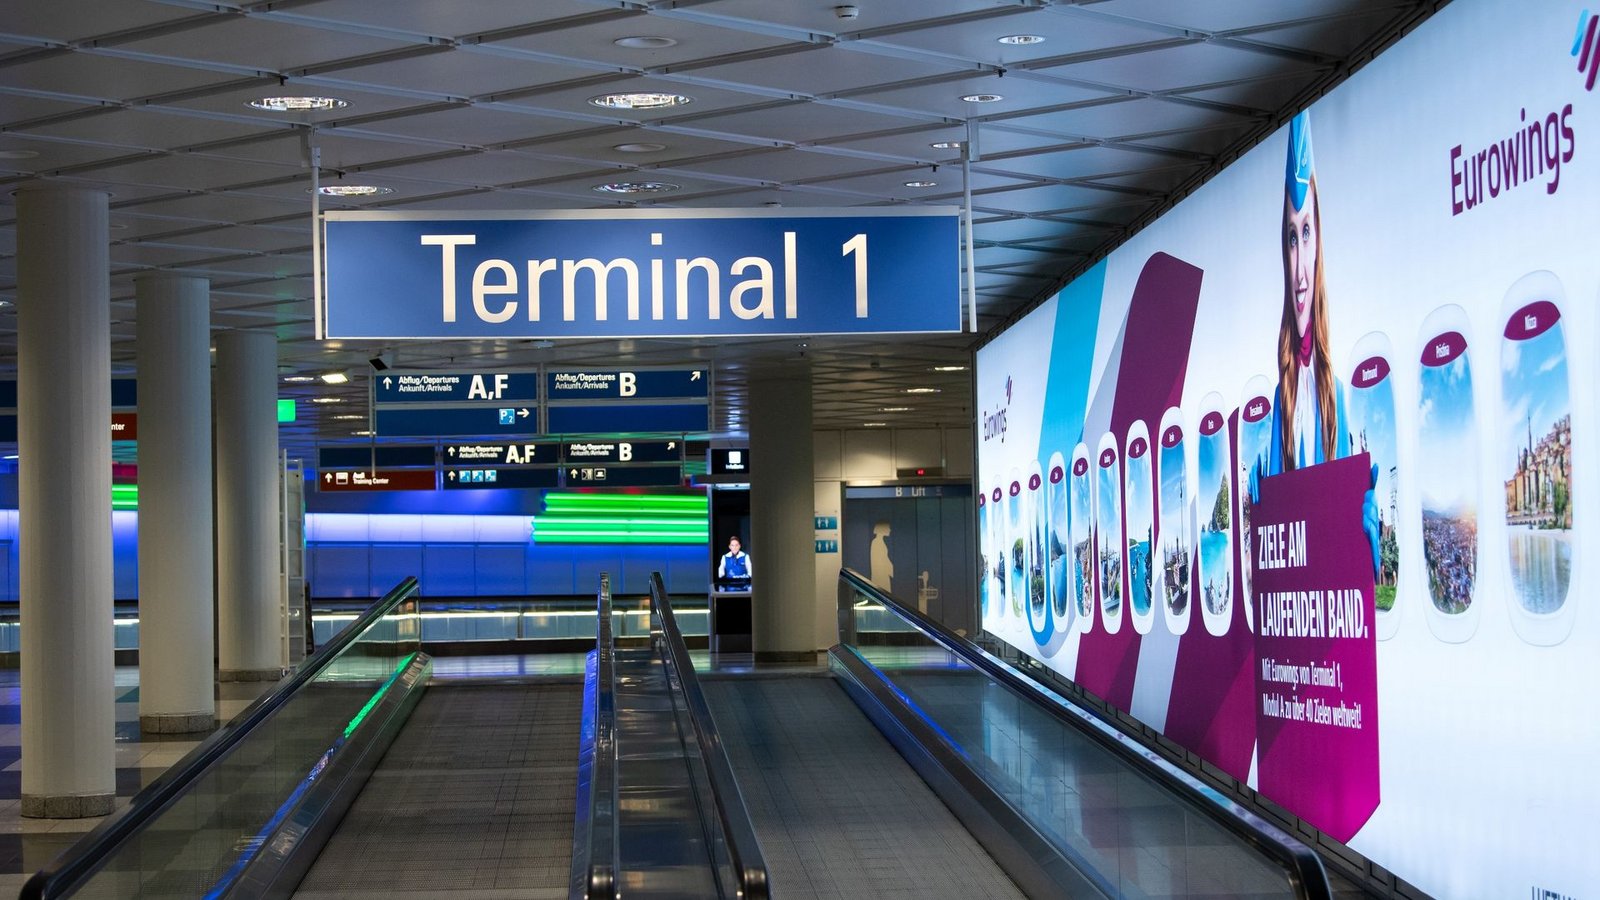 Fast menschenleer zeigt sich das Terminal 1 am Flughafen München, nachdem es zwischenzeitlich wegen einer Personenfahndung geräumt wurde.Foto: Sven Hoppe/dpa